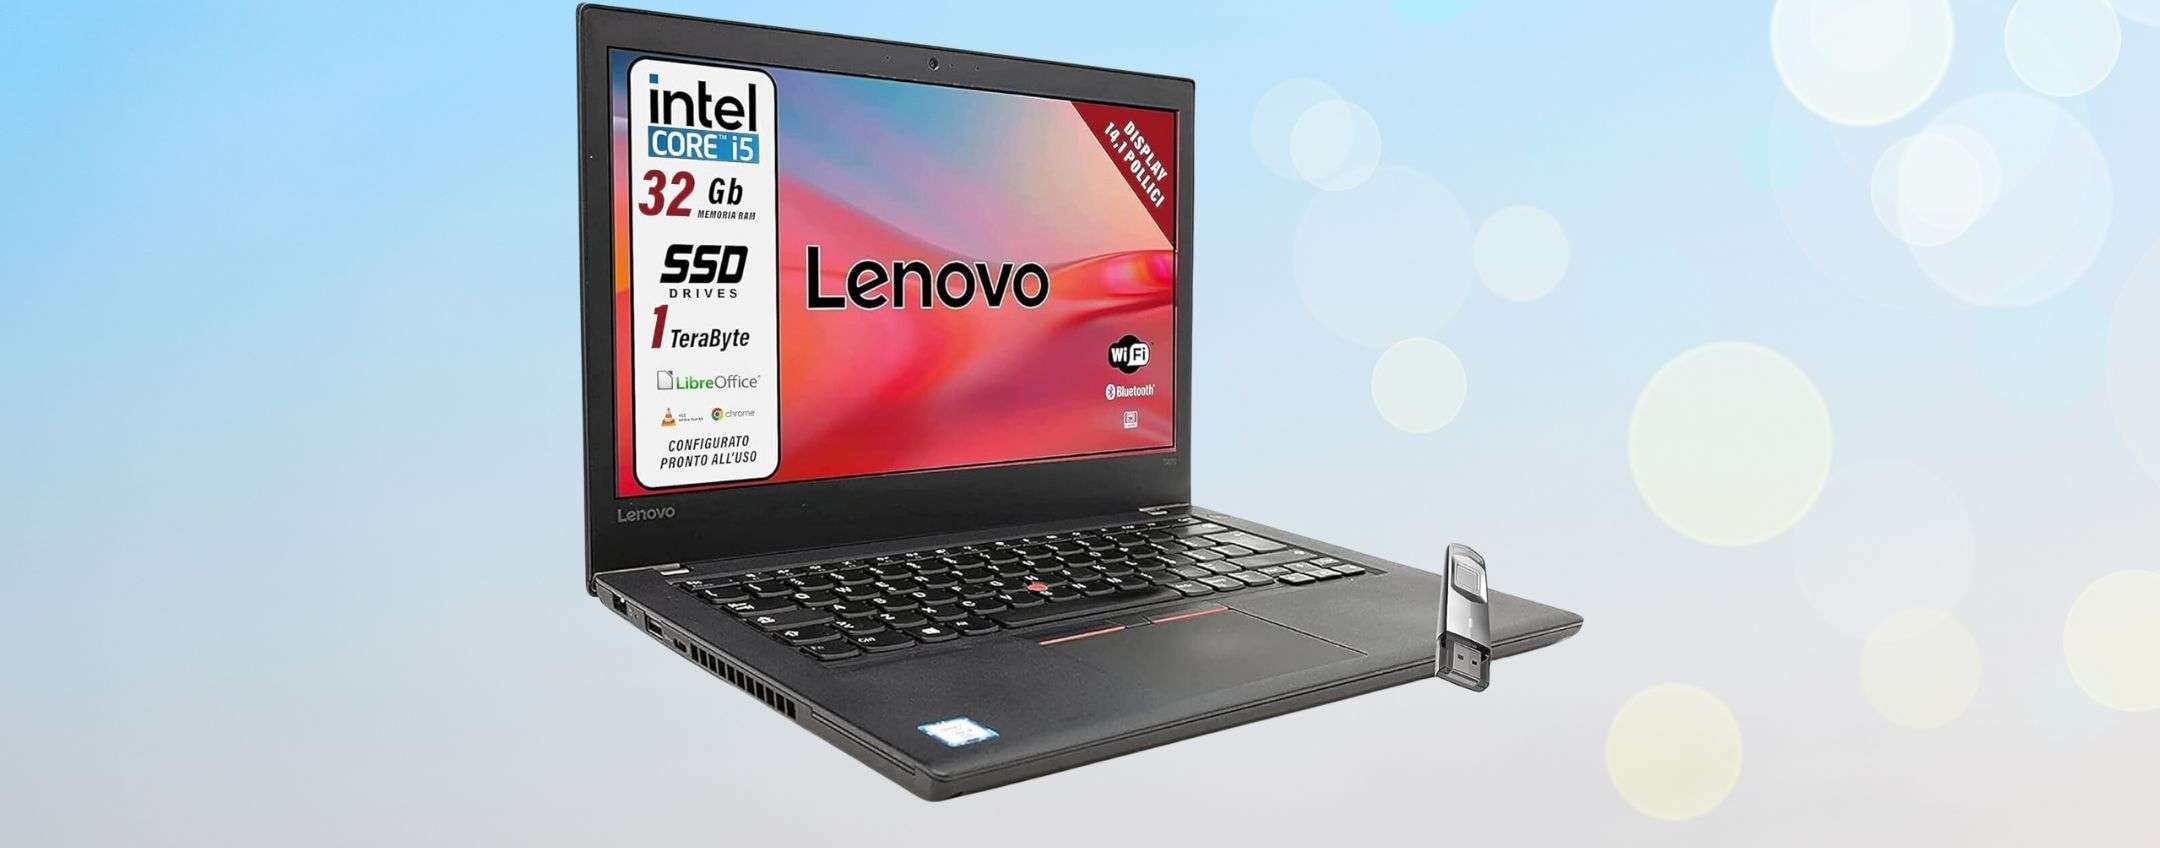 Notebook Lenovo ricondizionato offerta Amazon